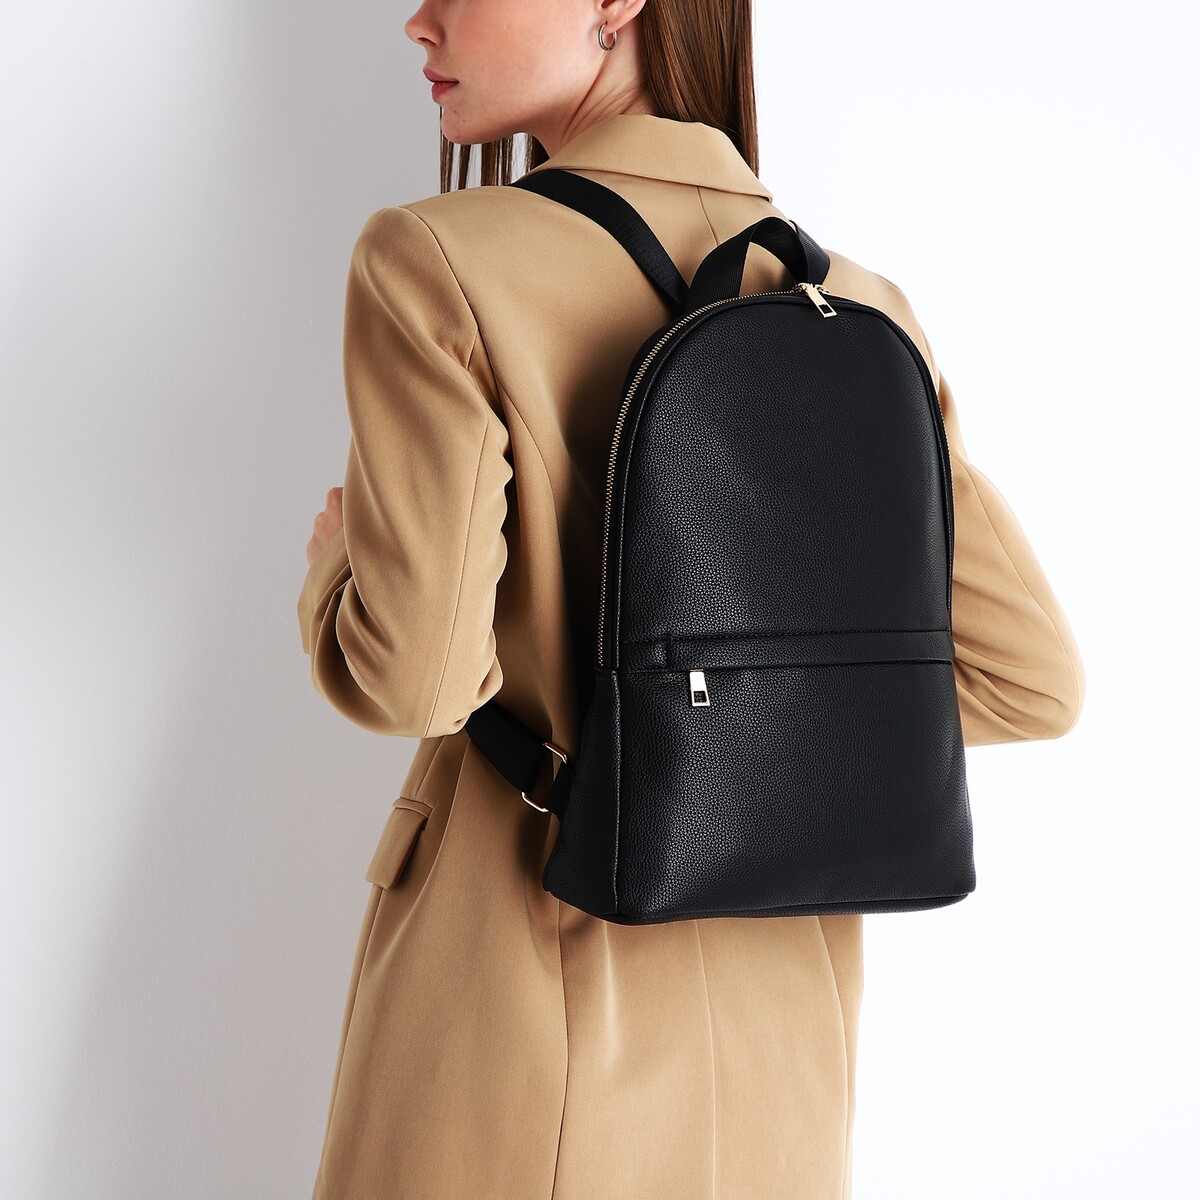 Купить недорого женский рюкзак из натуральной кожи и текстиля в интернет-магазине aikimaster.ru